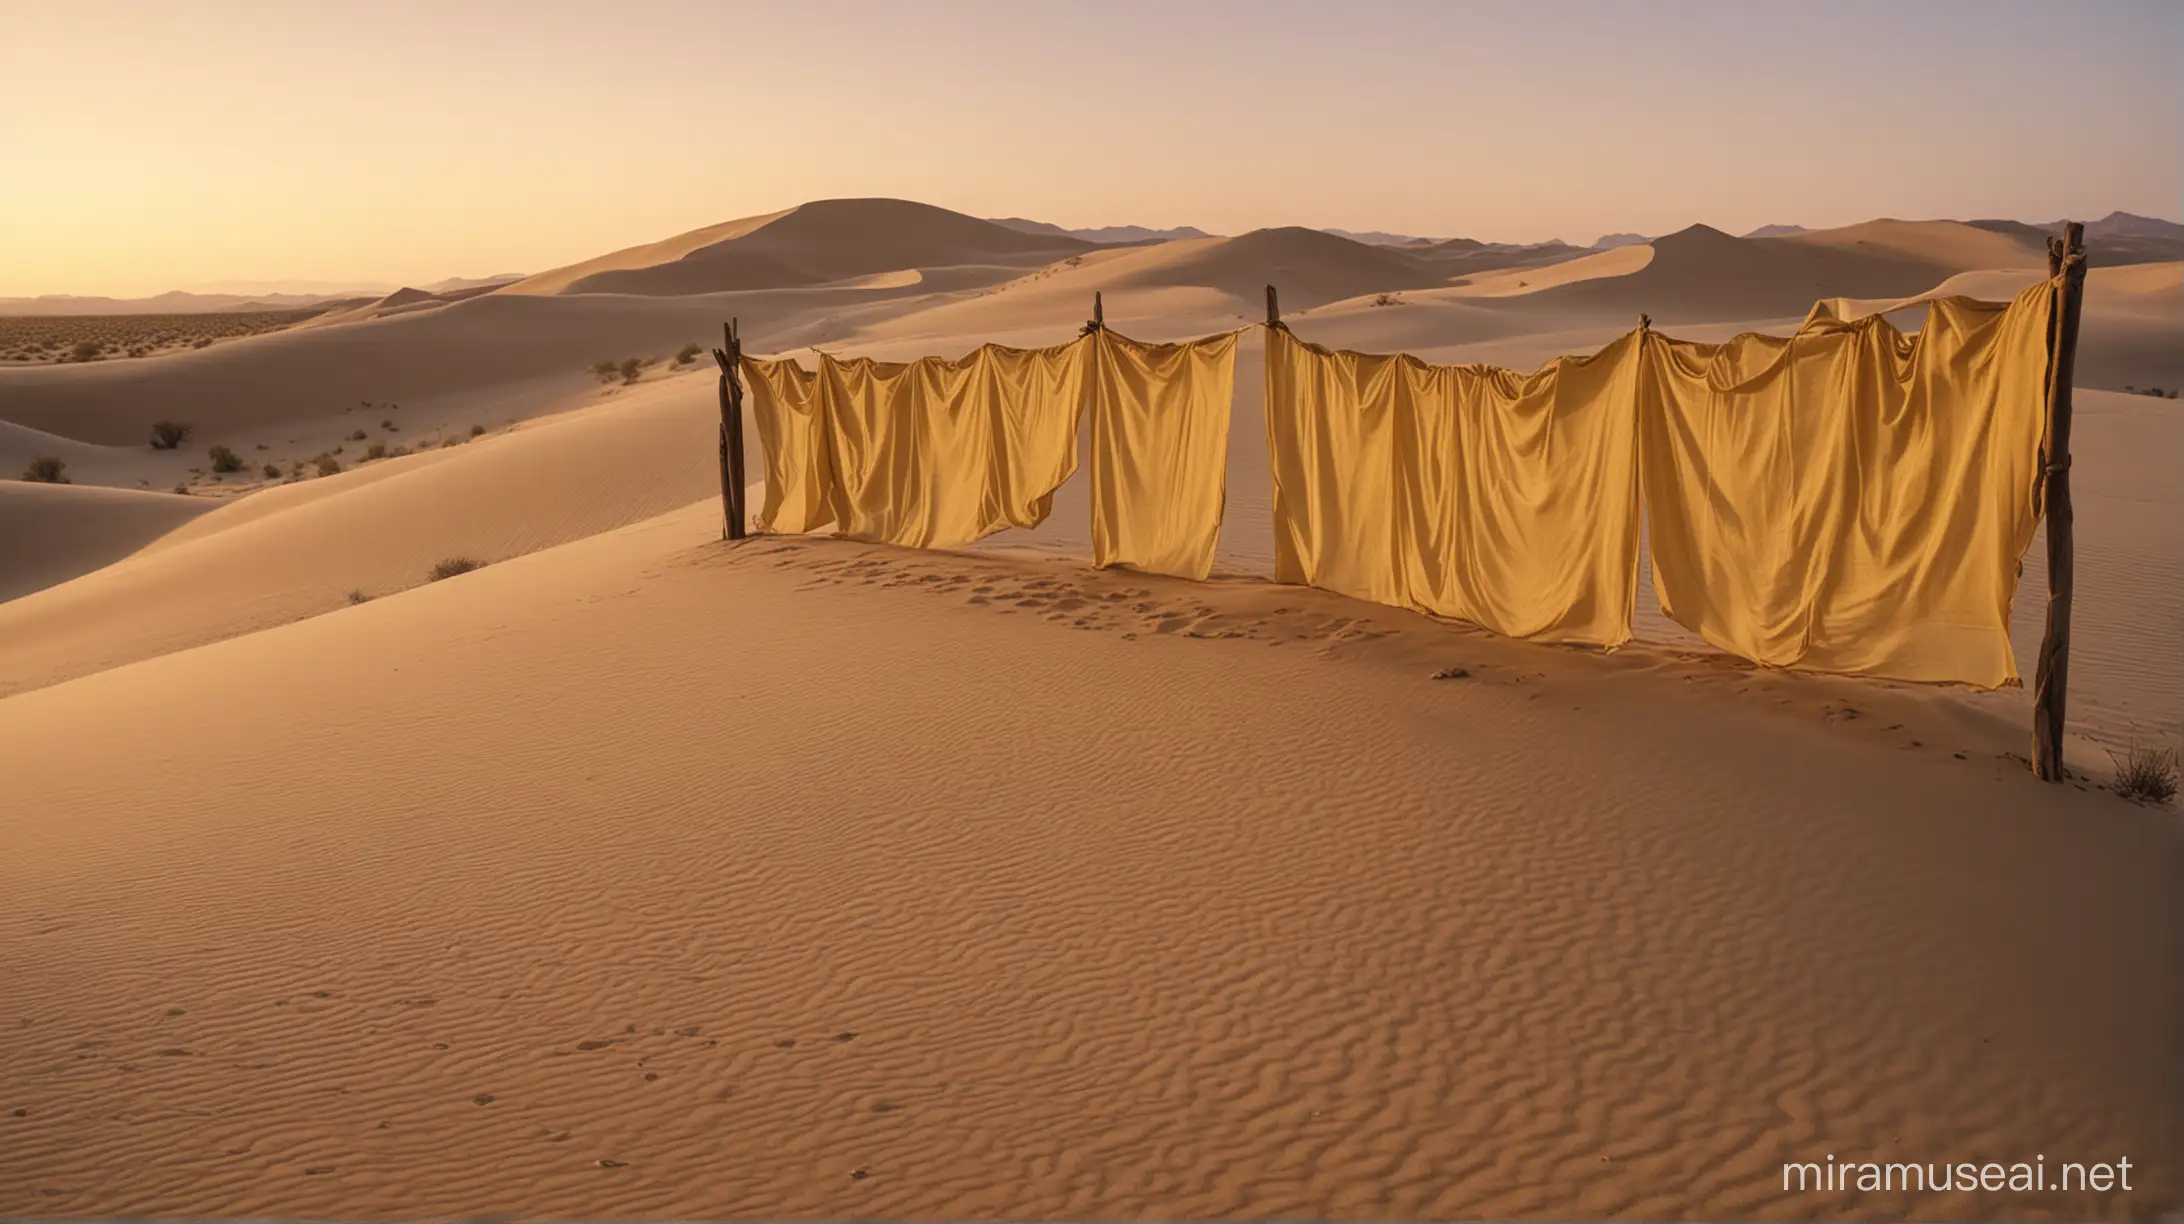 Rideaux dorés flottant dans le vent entourés de dunes du désert à l'aube, fujifilm fujicolor, lumière sombre, objectif 220 mm, f/2.8